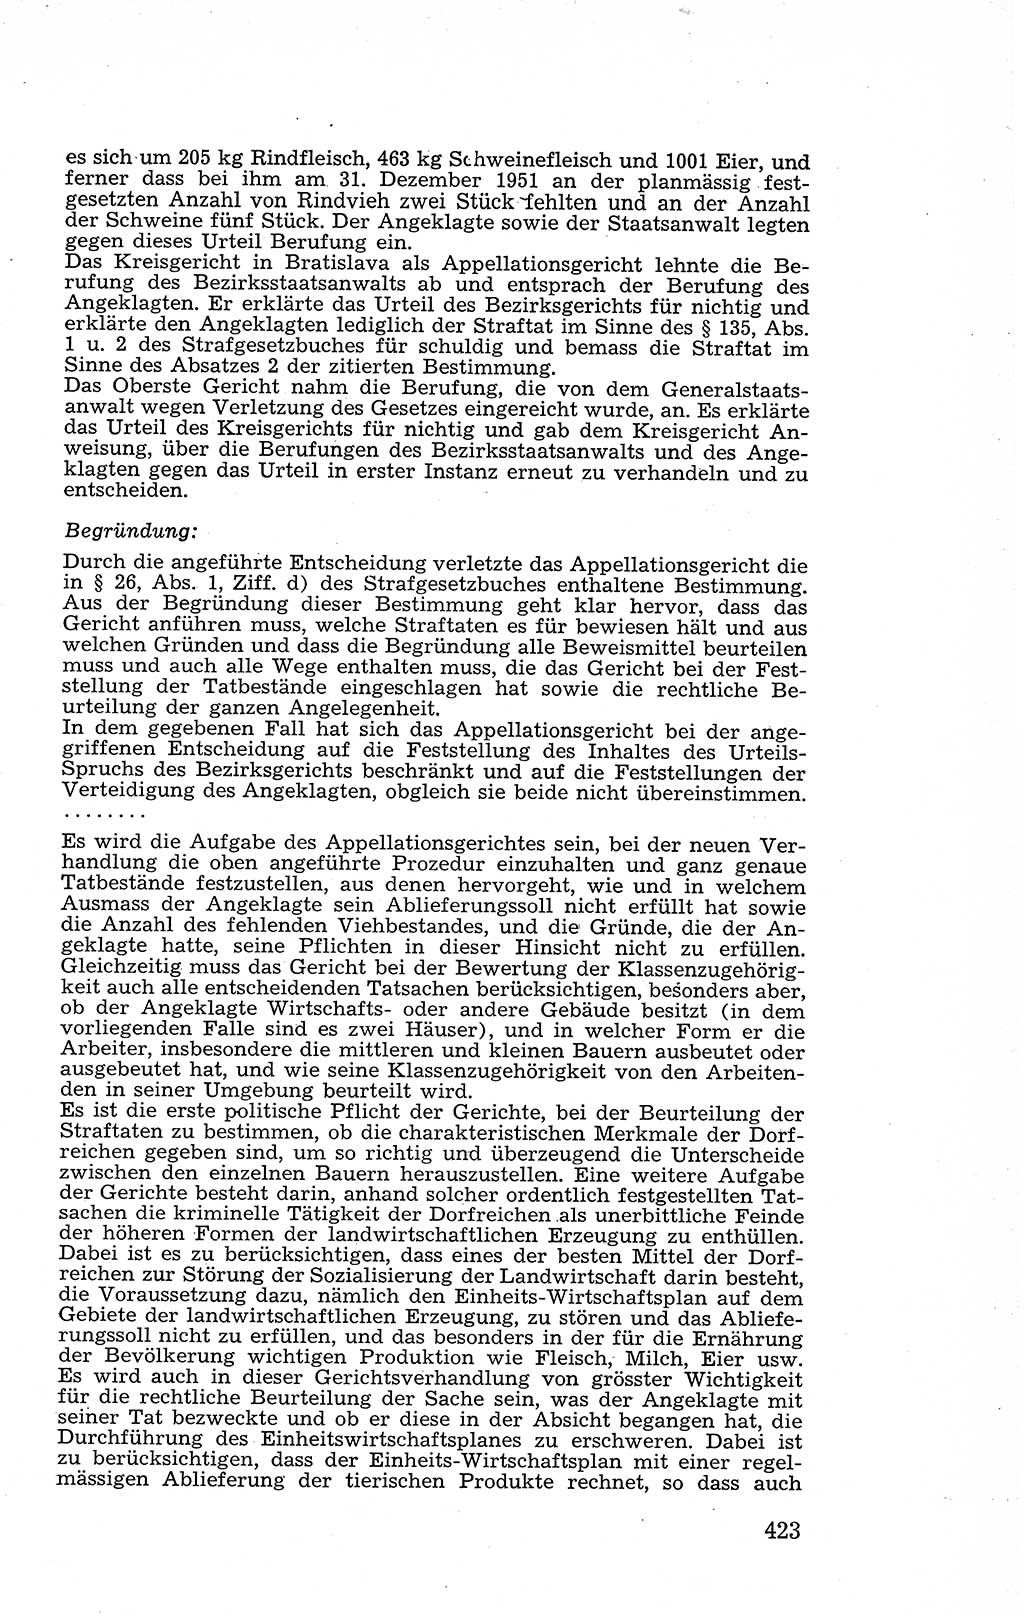 Recht in Fesseln, Dokumente, Internationale Juristen-Kommission [Bundesrepublik Deutschland (BRD)] 1955, Seite 423 (R. Dok. IJK BRD 1955, S. 423)